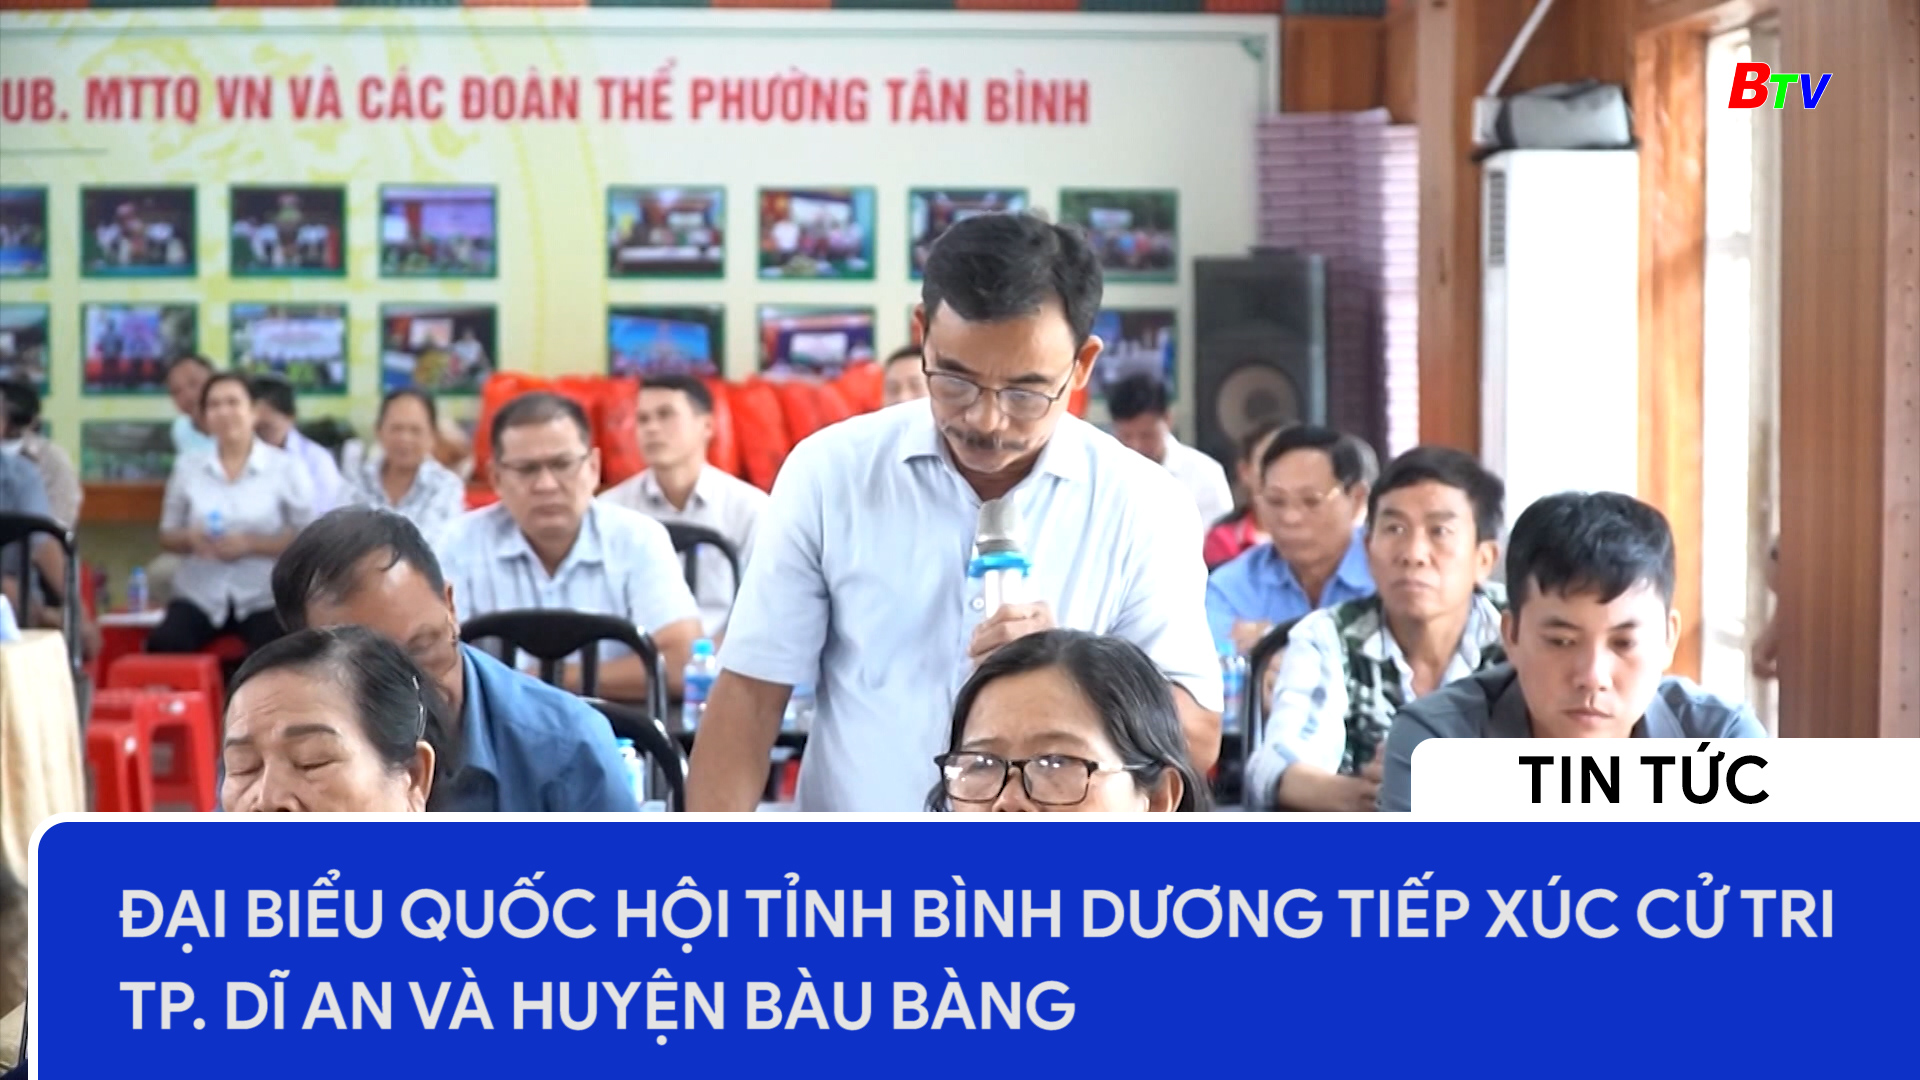 Đại biểu Quốc hội tỉnh Bình Dương tiếp xúc cử tri TP. Dĩ An và huyện Bàu Bàng